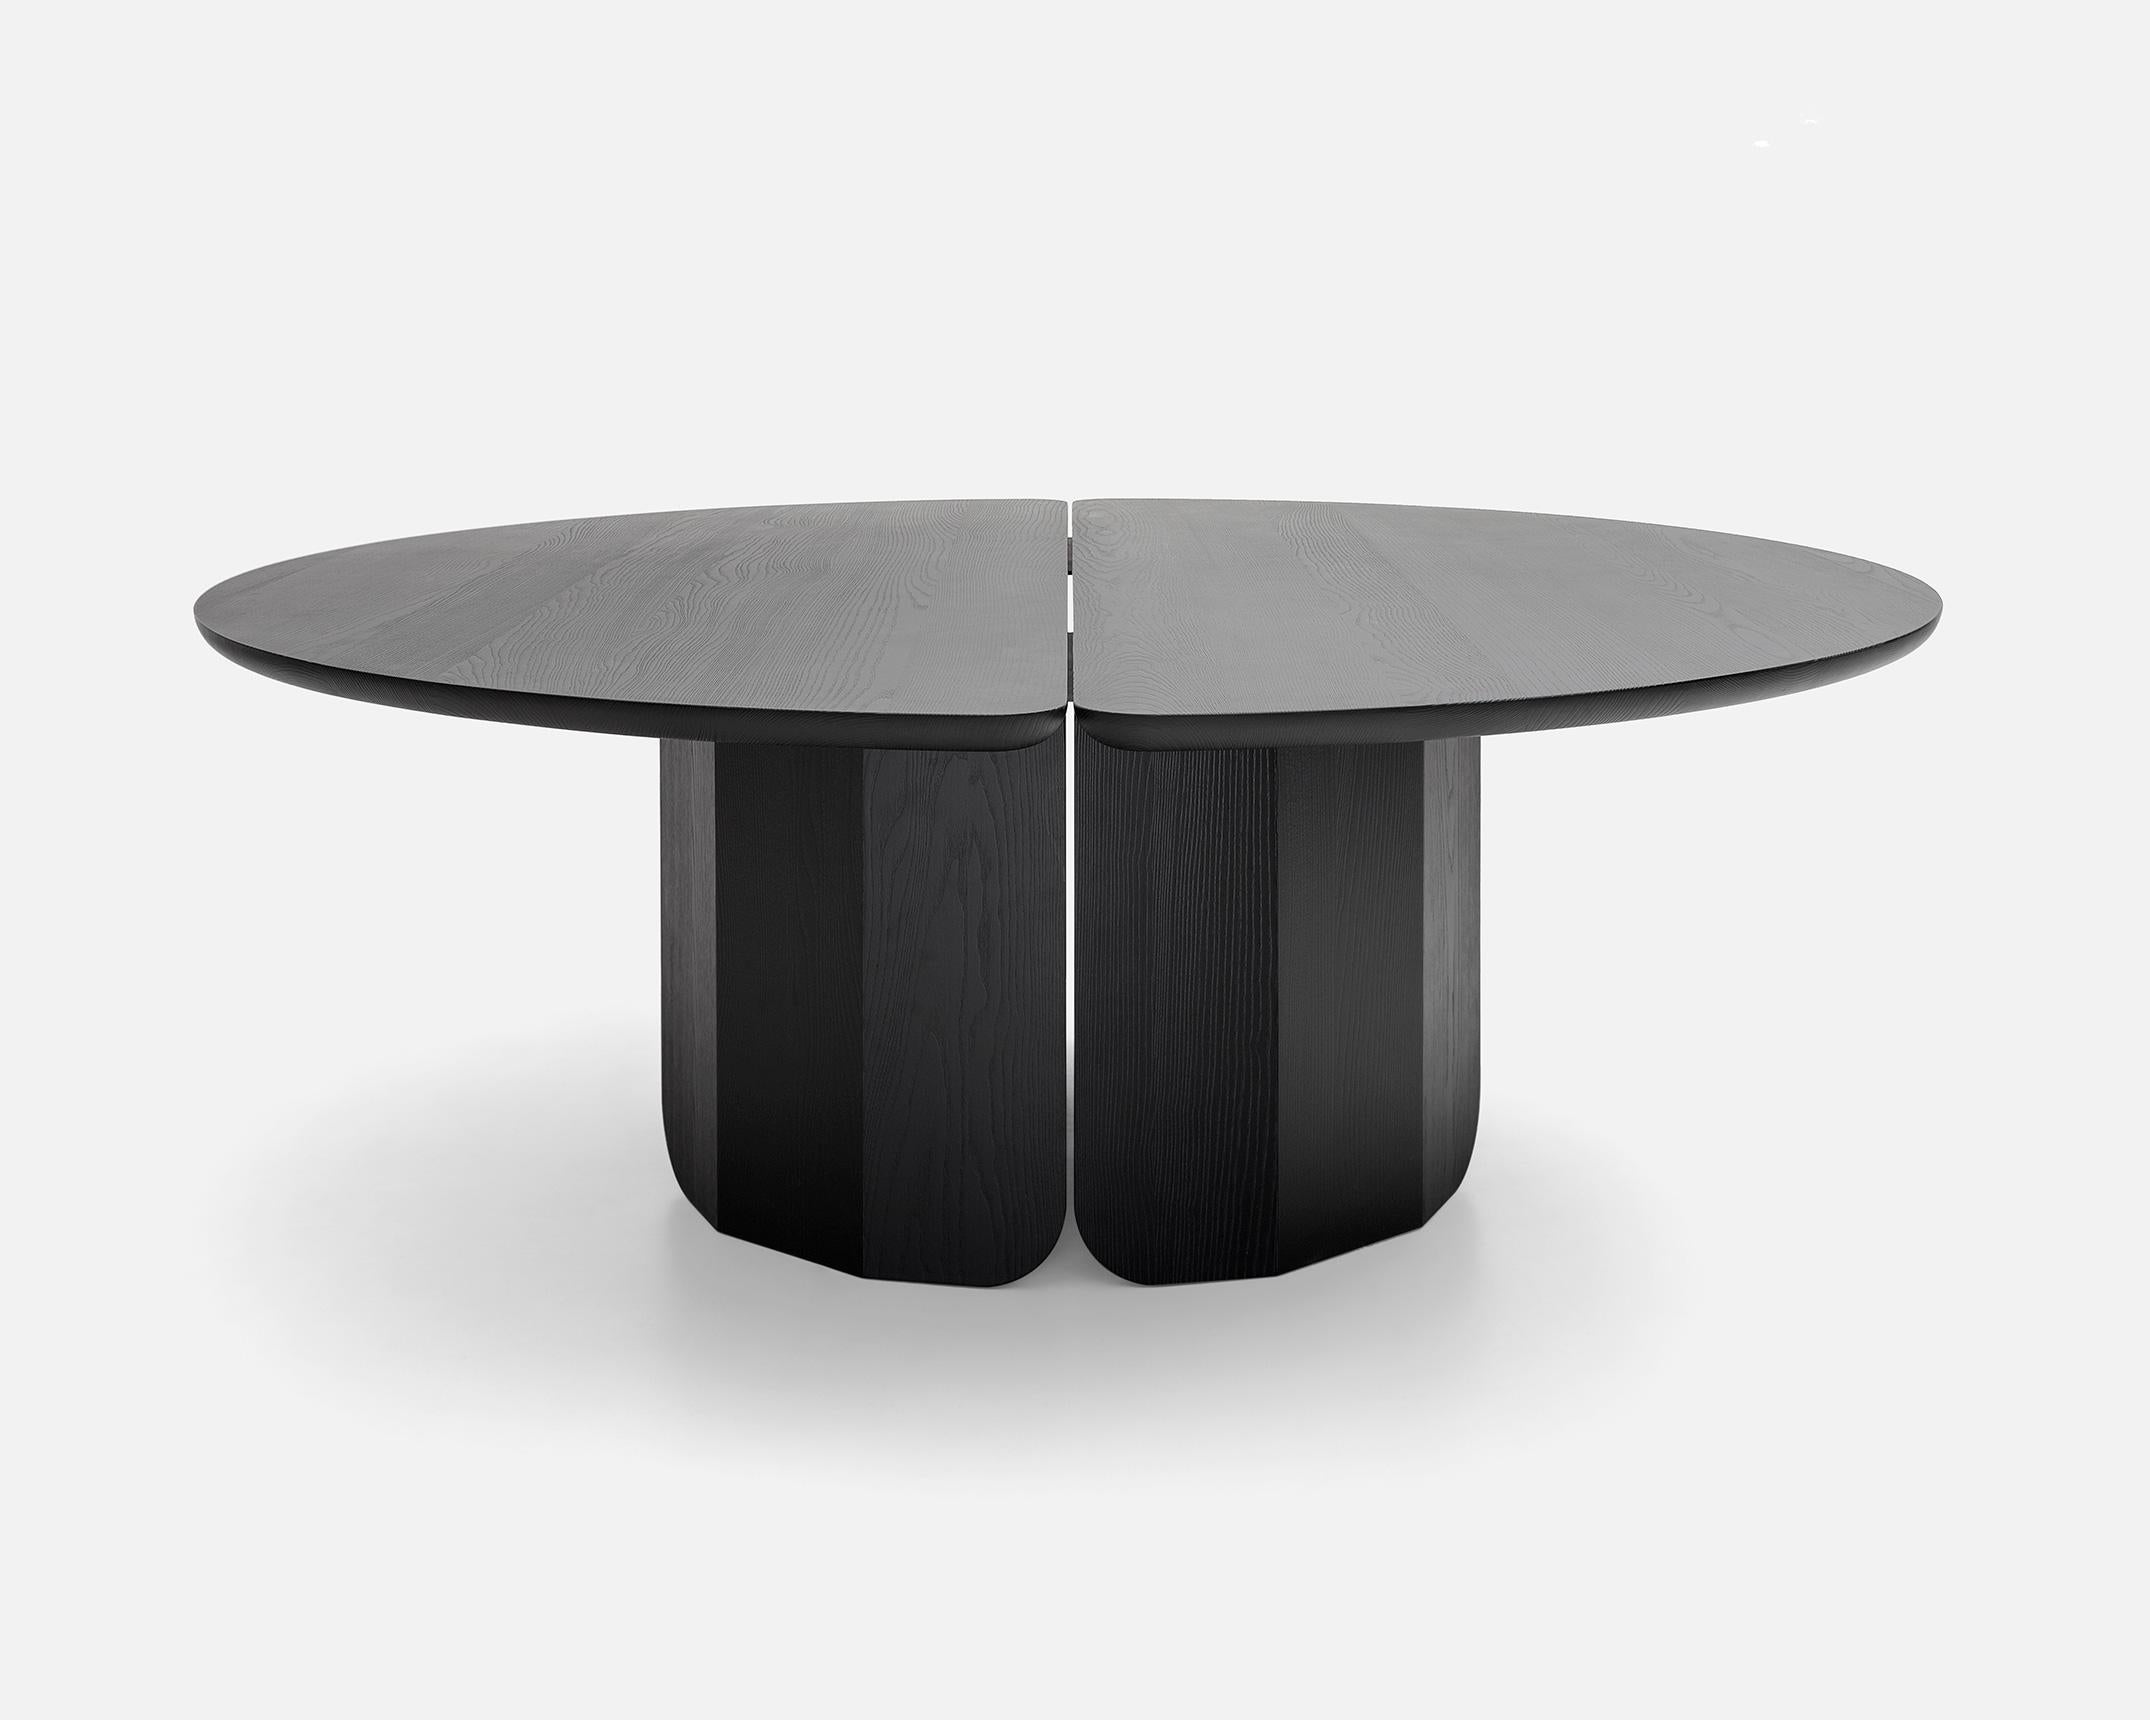 La table est dotée d'un plateau circulaire en frêne brossé teinté noir, qui peut avoir une finition mate ou brillante. Il est composé de deux demi-cercles qui forment une fente centrale : le bord est arrondi et s'incurve vers le centre, soulignant